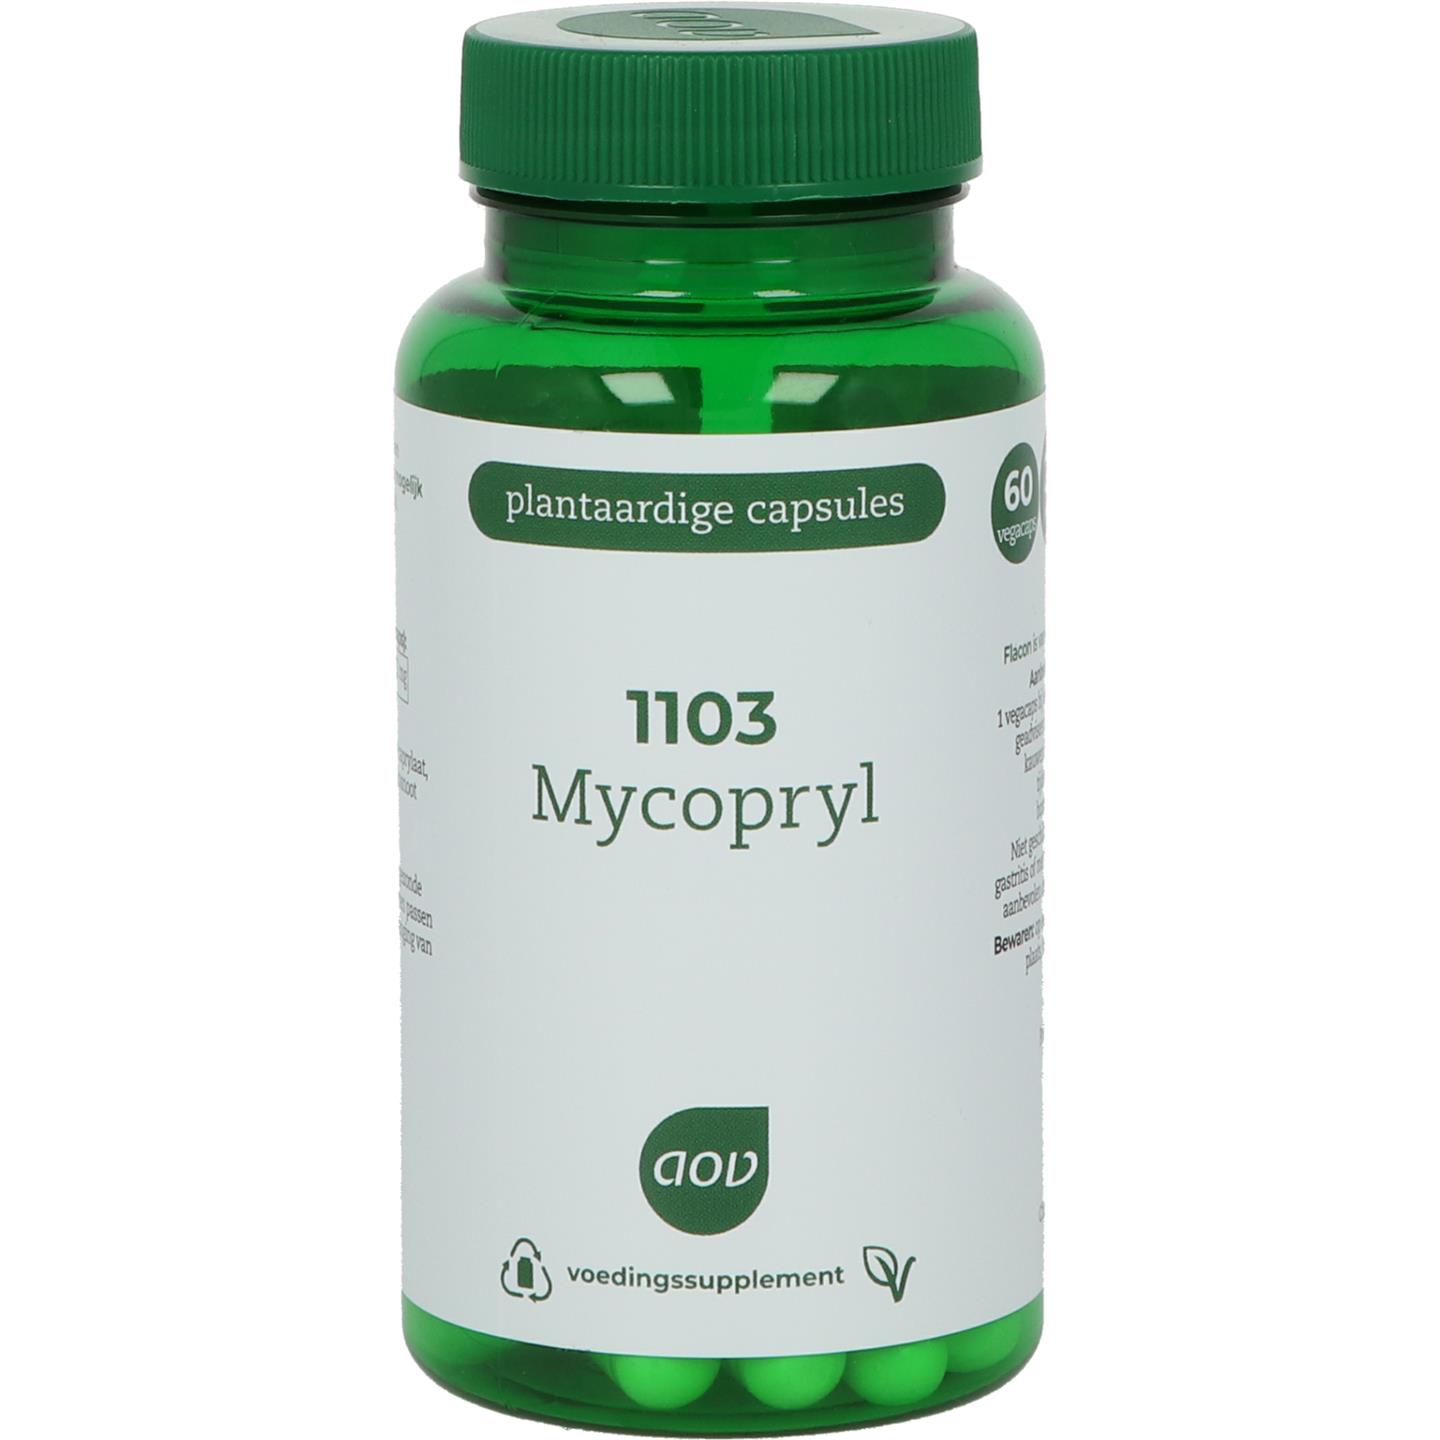 1103 Mycopryl